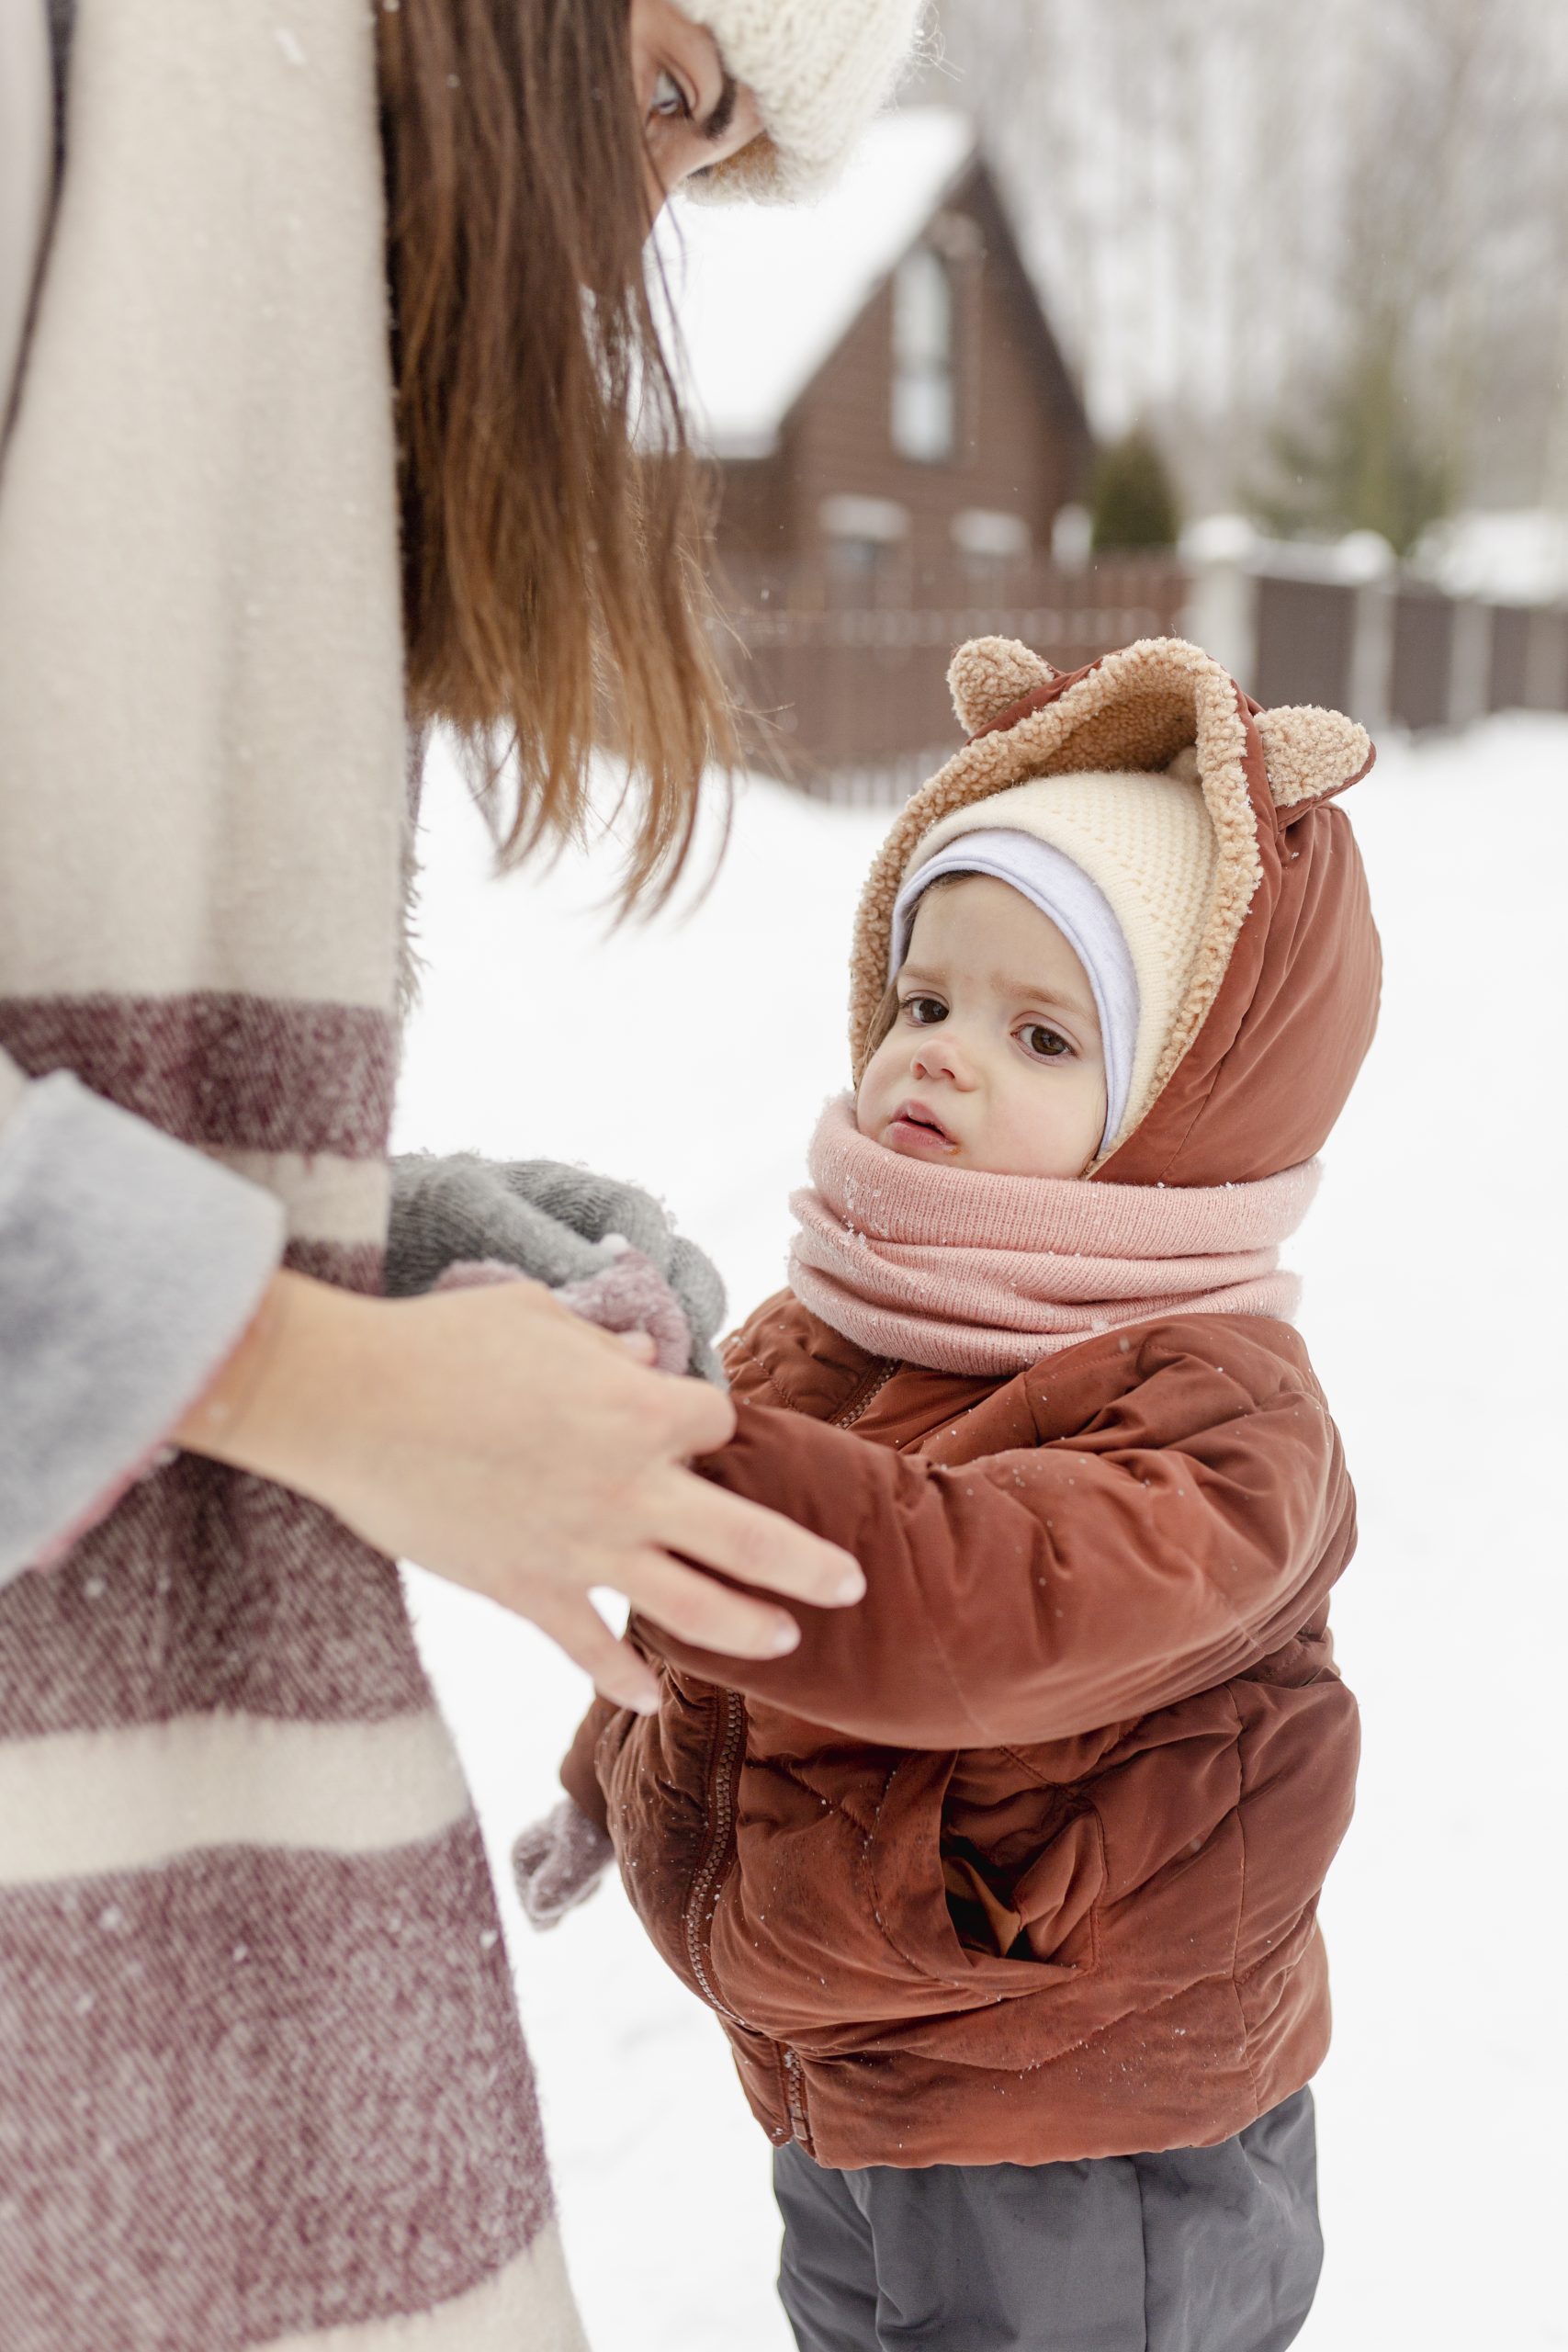 como vestir o bebê de acordo com a temperatura Conforto e Segurança: Como Vestir o Bebê de Acordo com a Temperatura crianca desfrutando de atividades de inverno com sua familia scaled